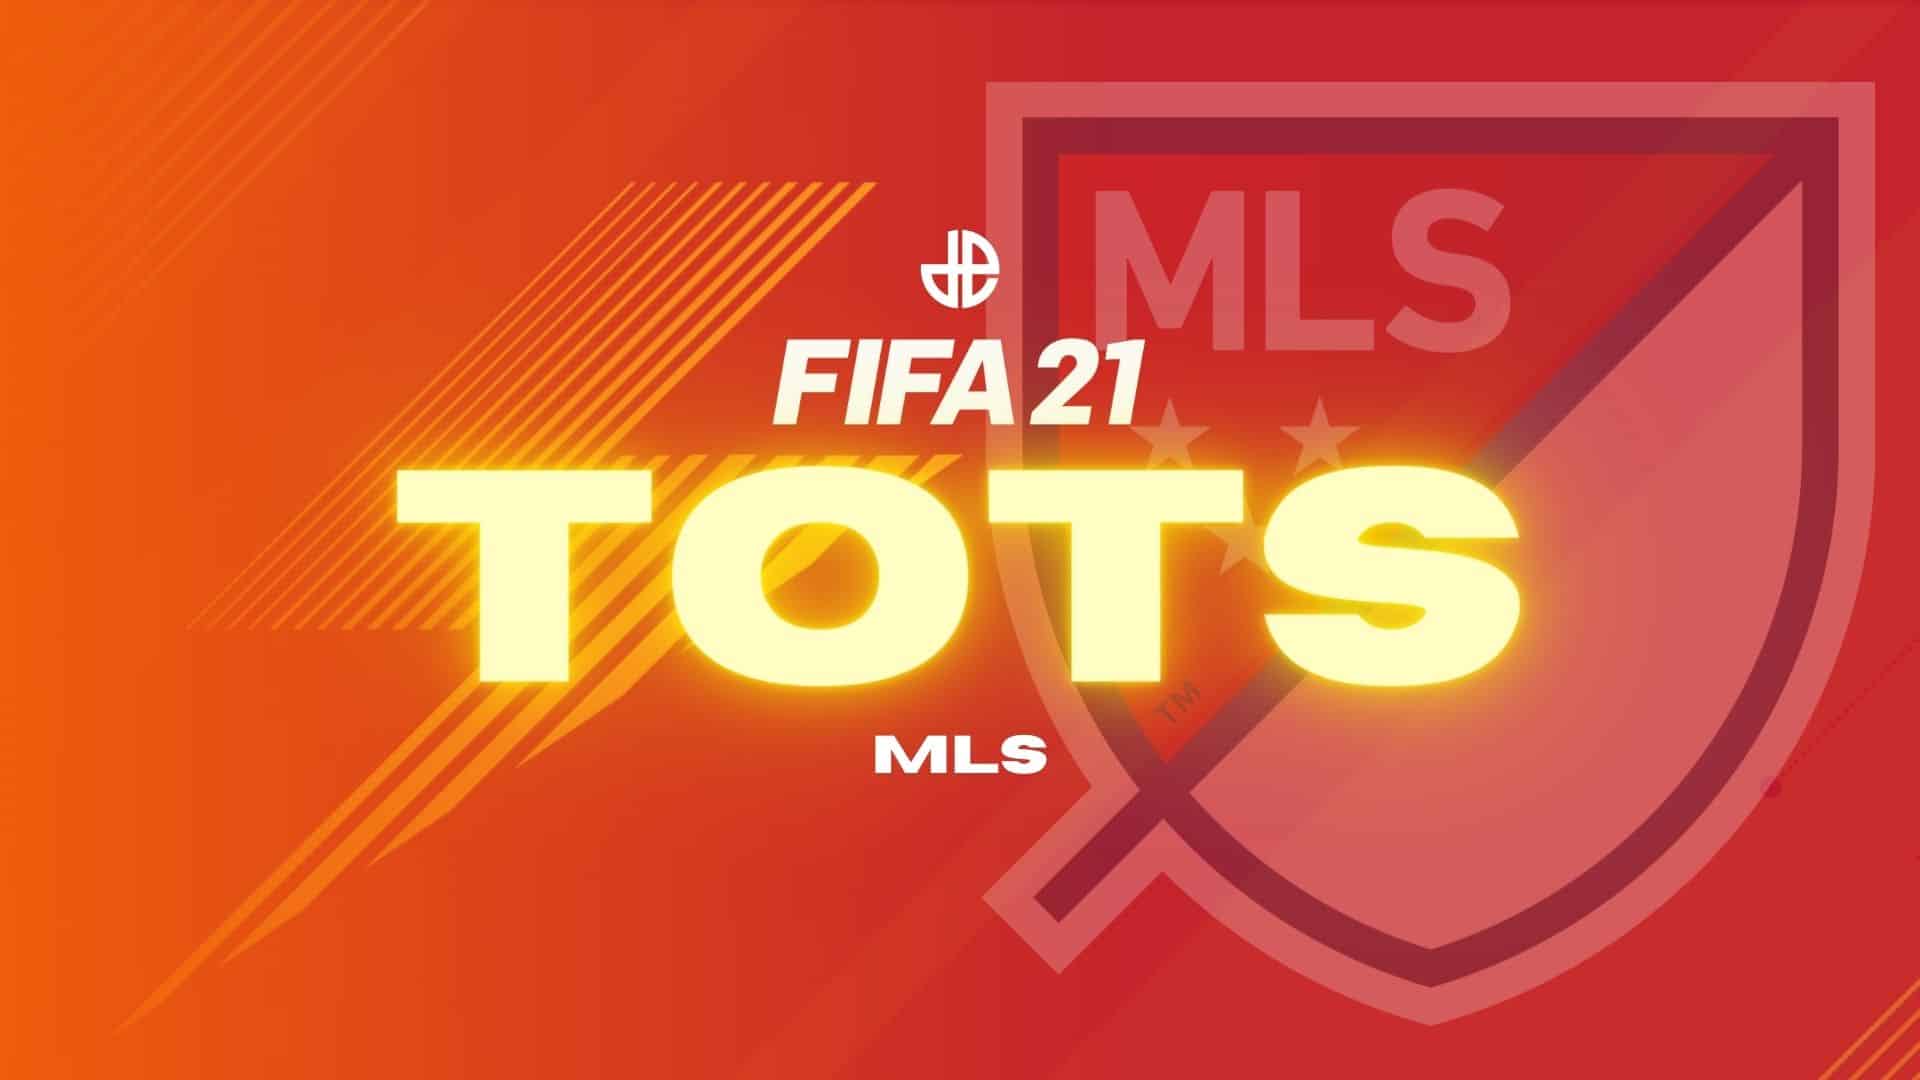 FIFA 21 TOTS MLS